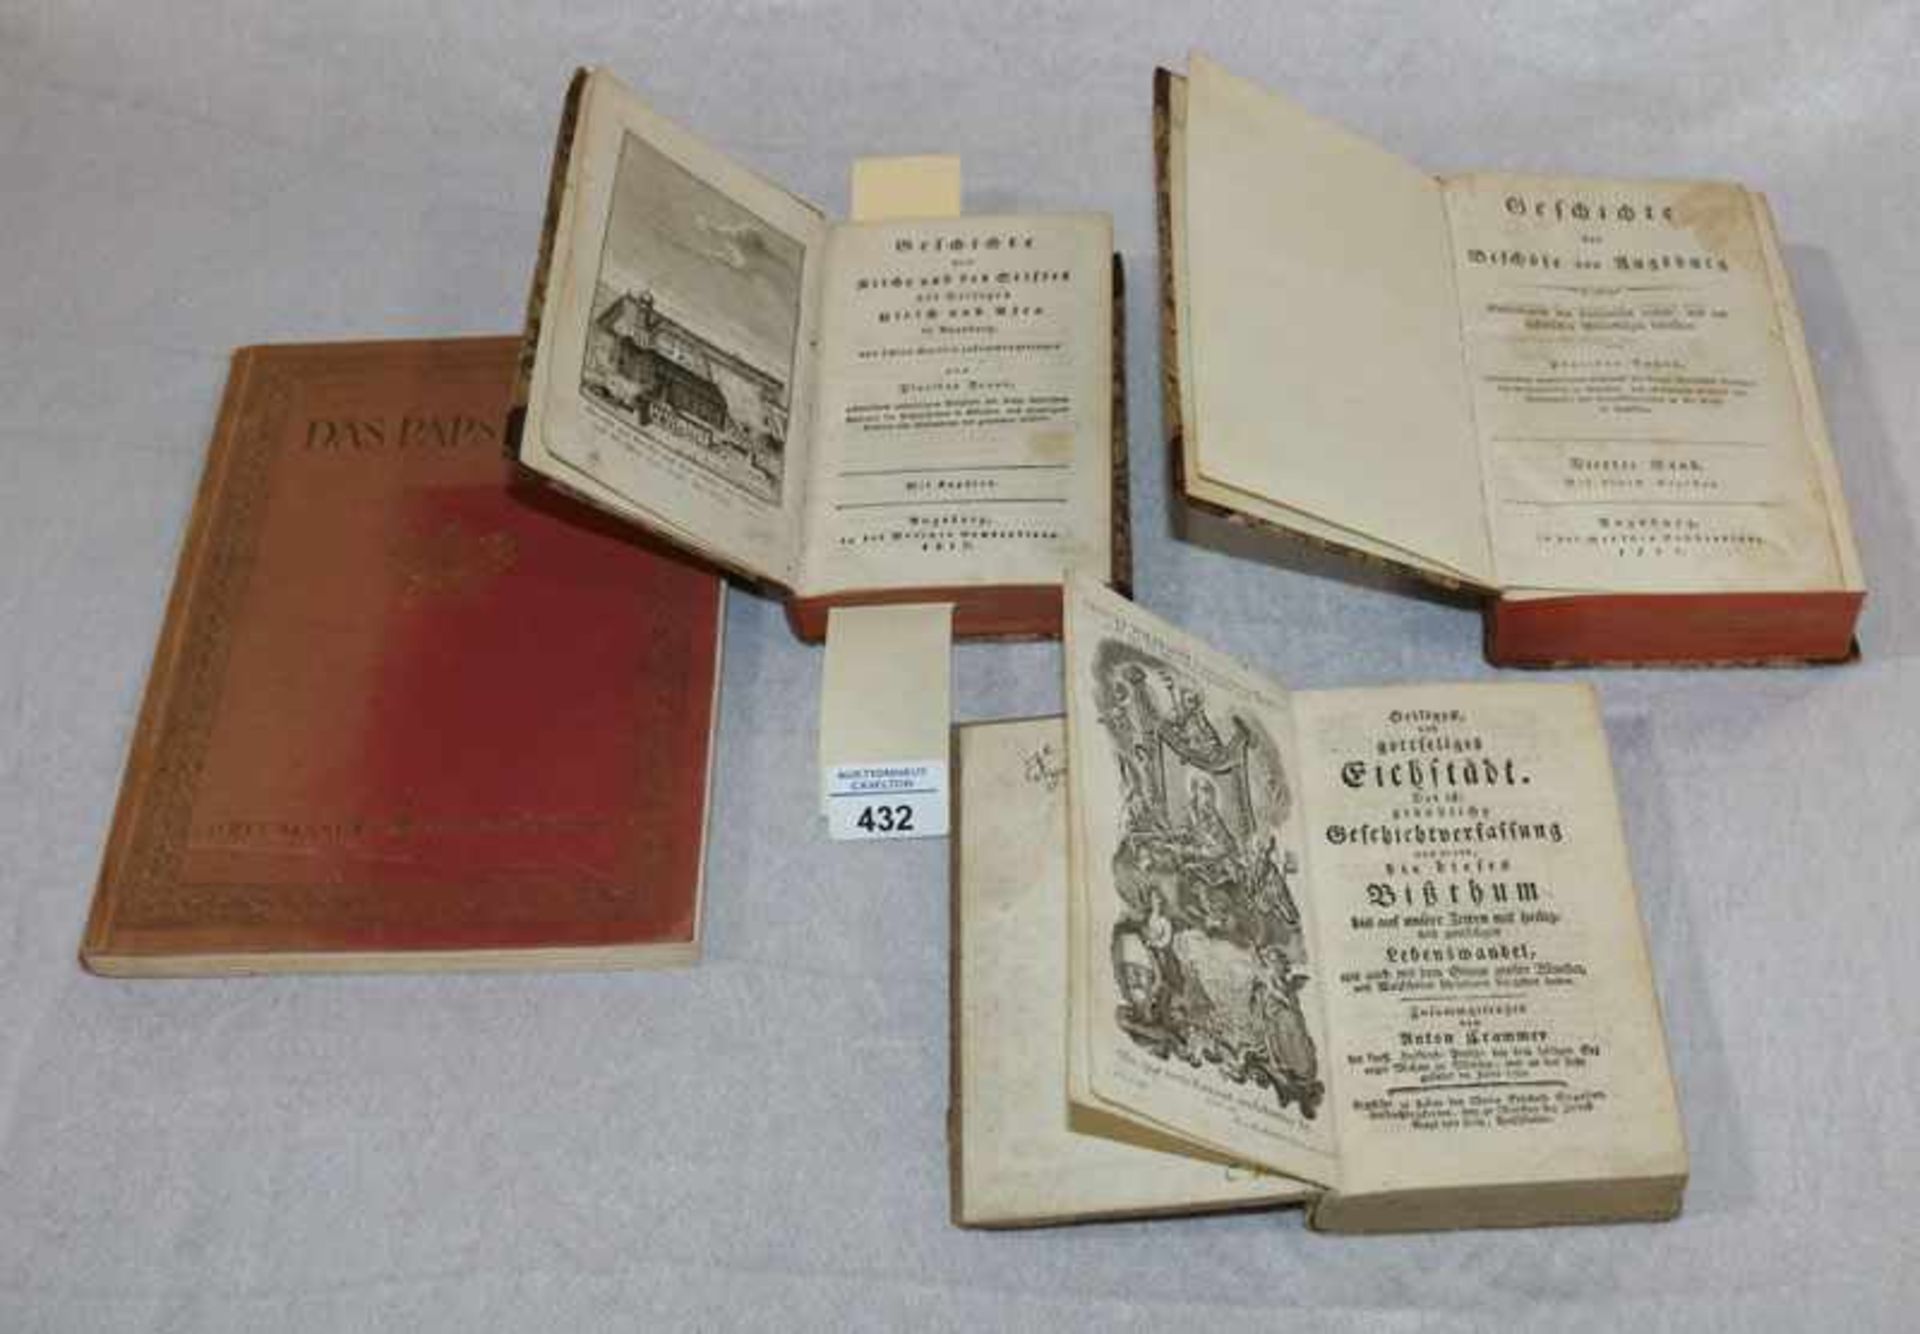 Bücher-Konvolut: 'Das Papstbuch', 1925, der Papstkatalog ab dem 1. Papst, 'Geschichte der Kirche und